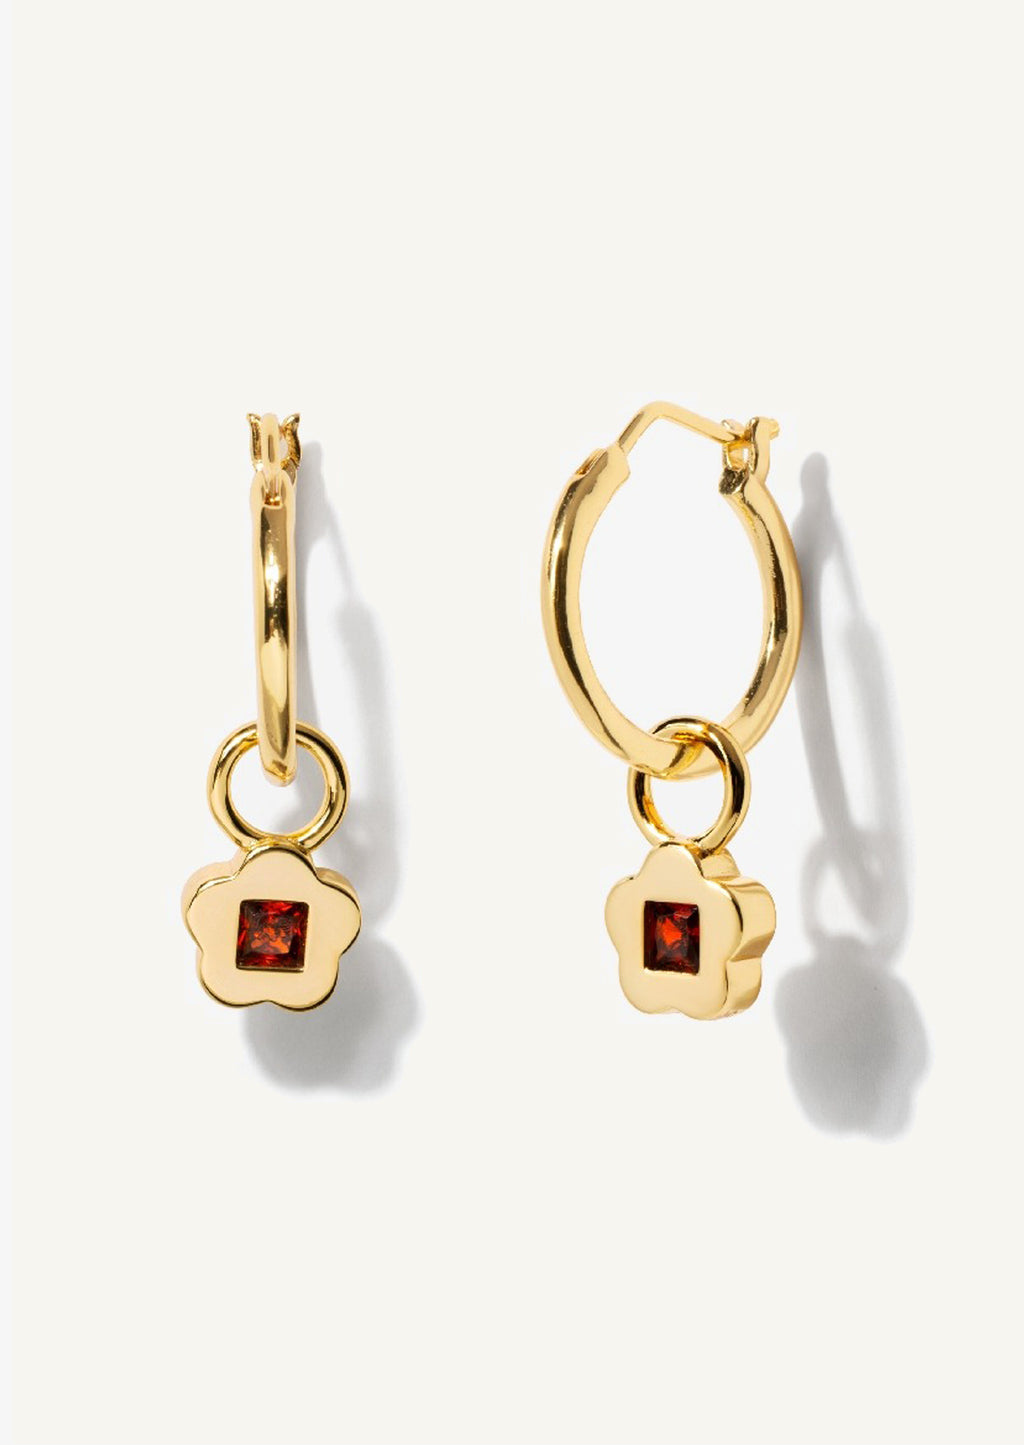 1: A pair of gold hoop earrings with garnet flower charm.